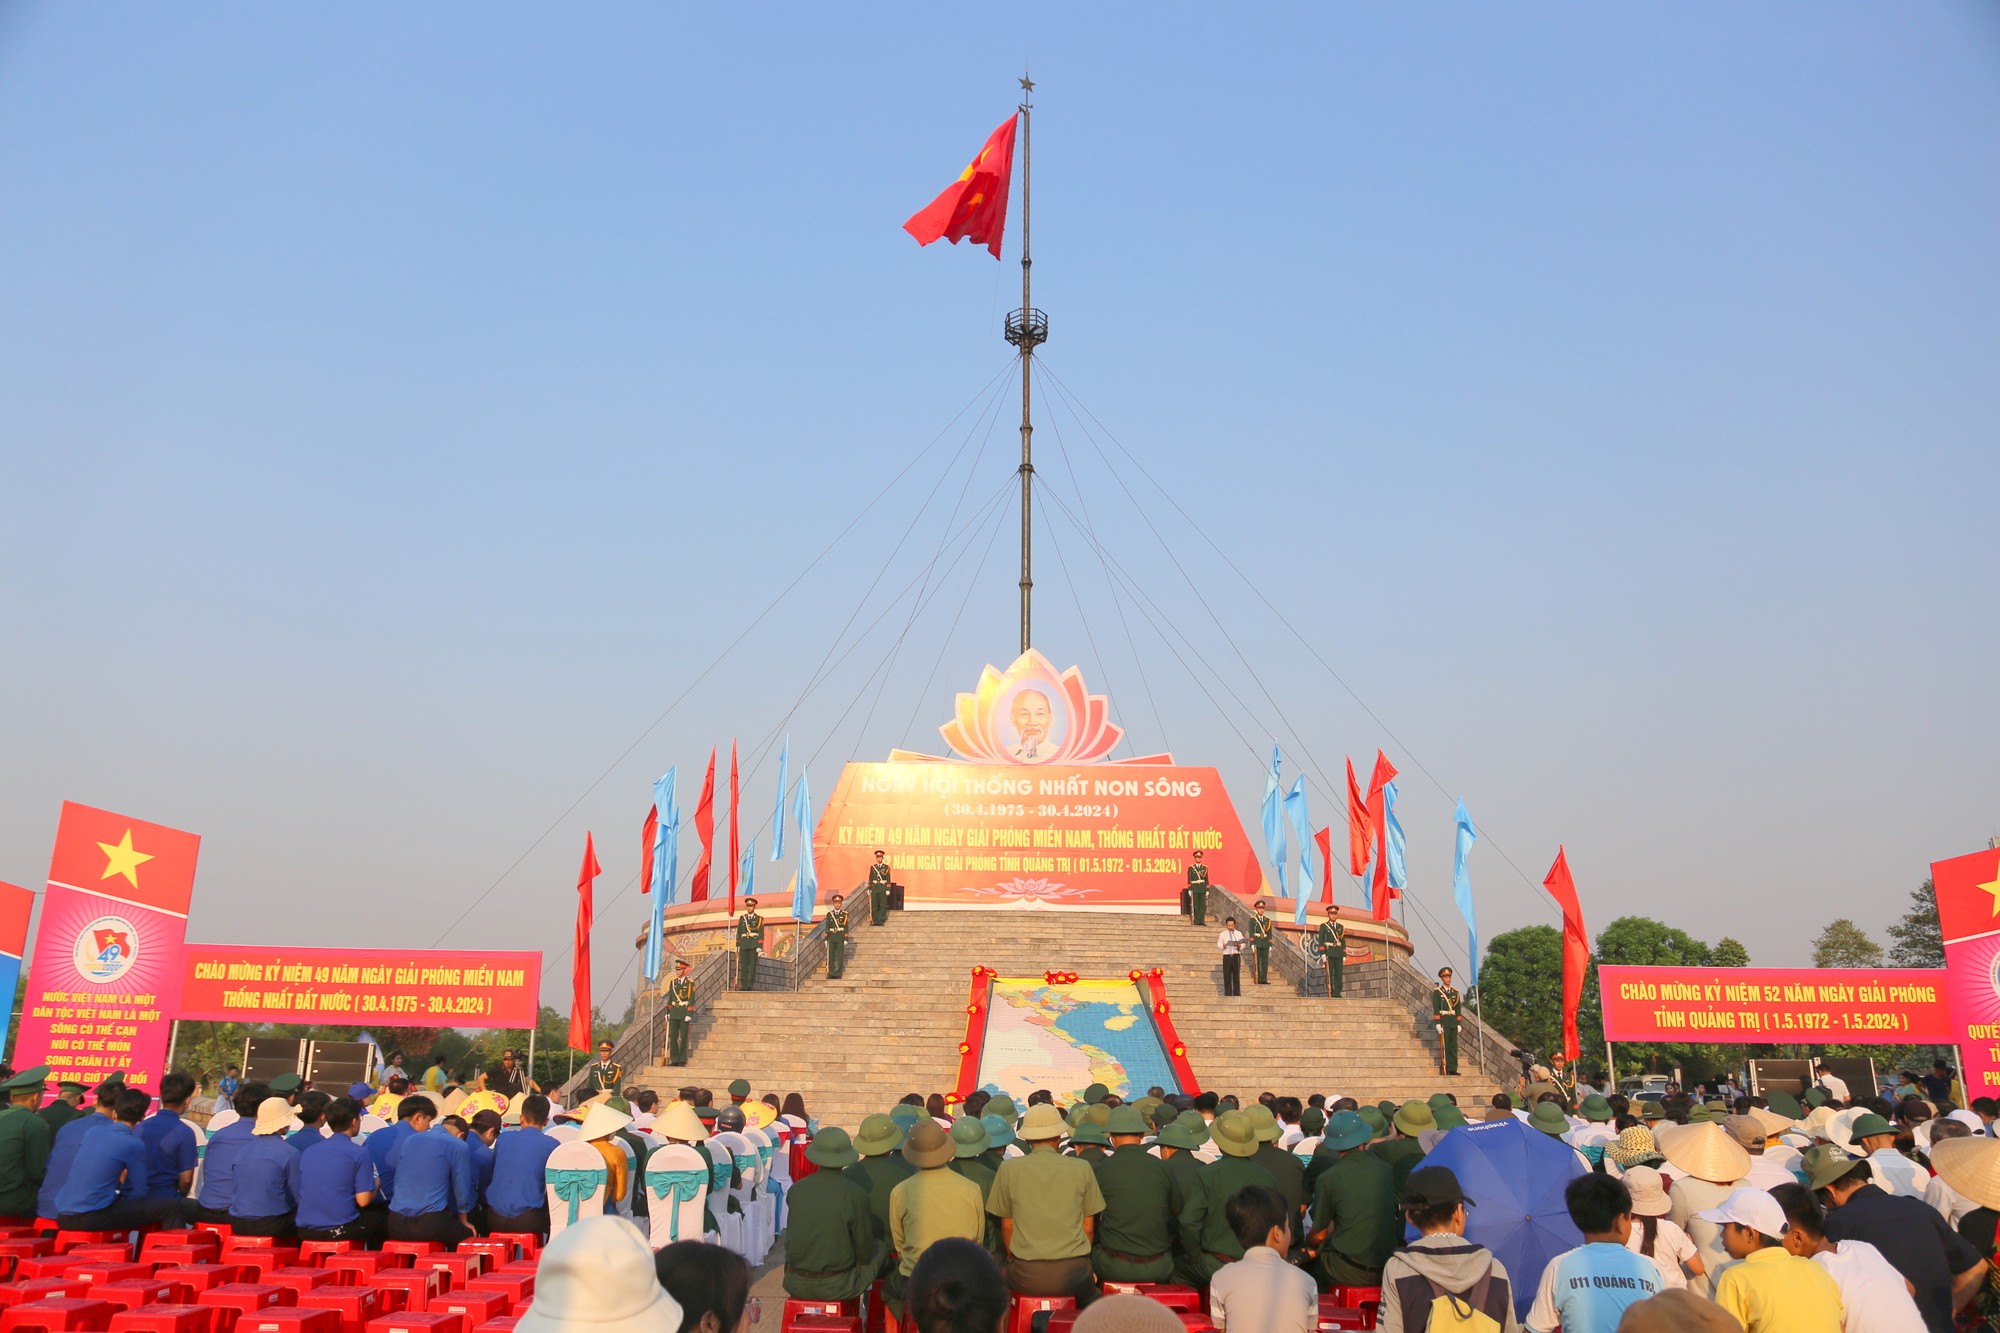 Trong hơn 2 thập kỷ, lá cờ trên kỳ đài Hiền Lương nơi đầu cầu giới tuyến vẫn kiêu hãnh tung bay, trở thành niềm tin và ý chí thống nhất của đồng bào hai miền Nam - Bắc.